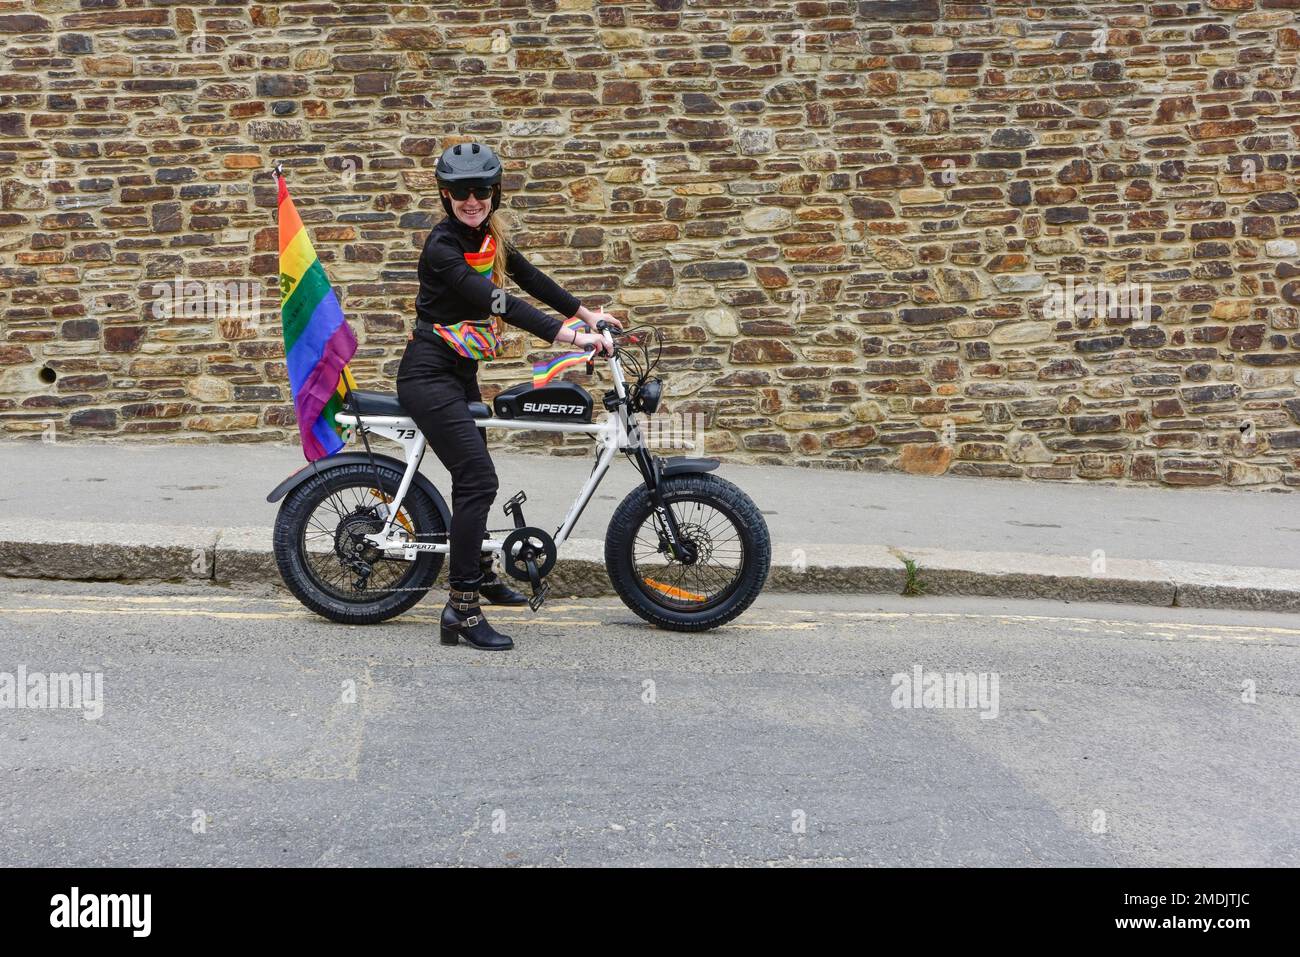 Une cycliste féminine utilisant des vélos électriques Super 73 au début du vibrant haut en couleur Cornouailles prides Pride parade dans le centre-ville de Newquay au Royaume-Uni. Banque D'Images